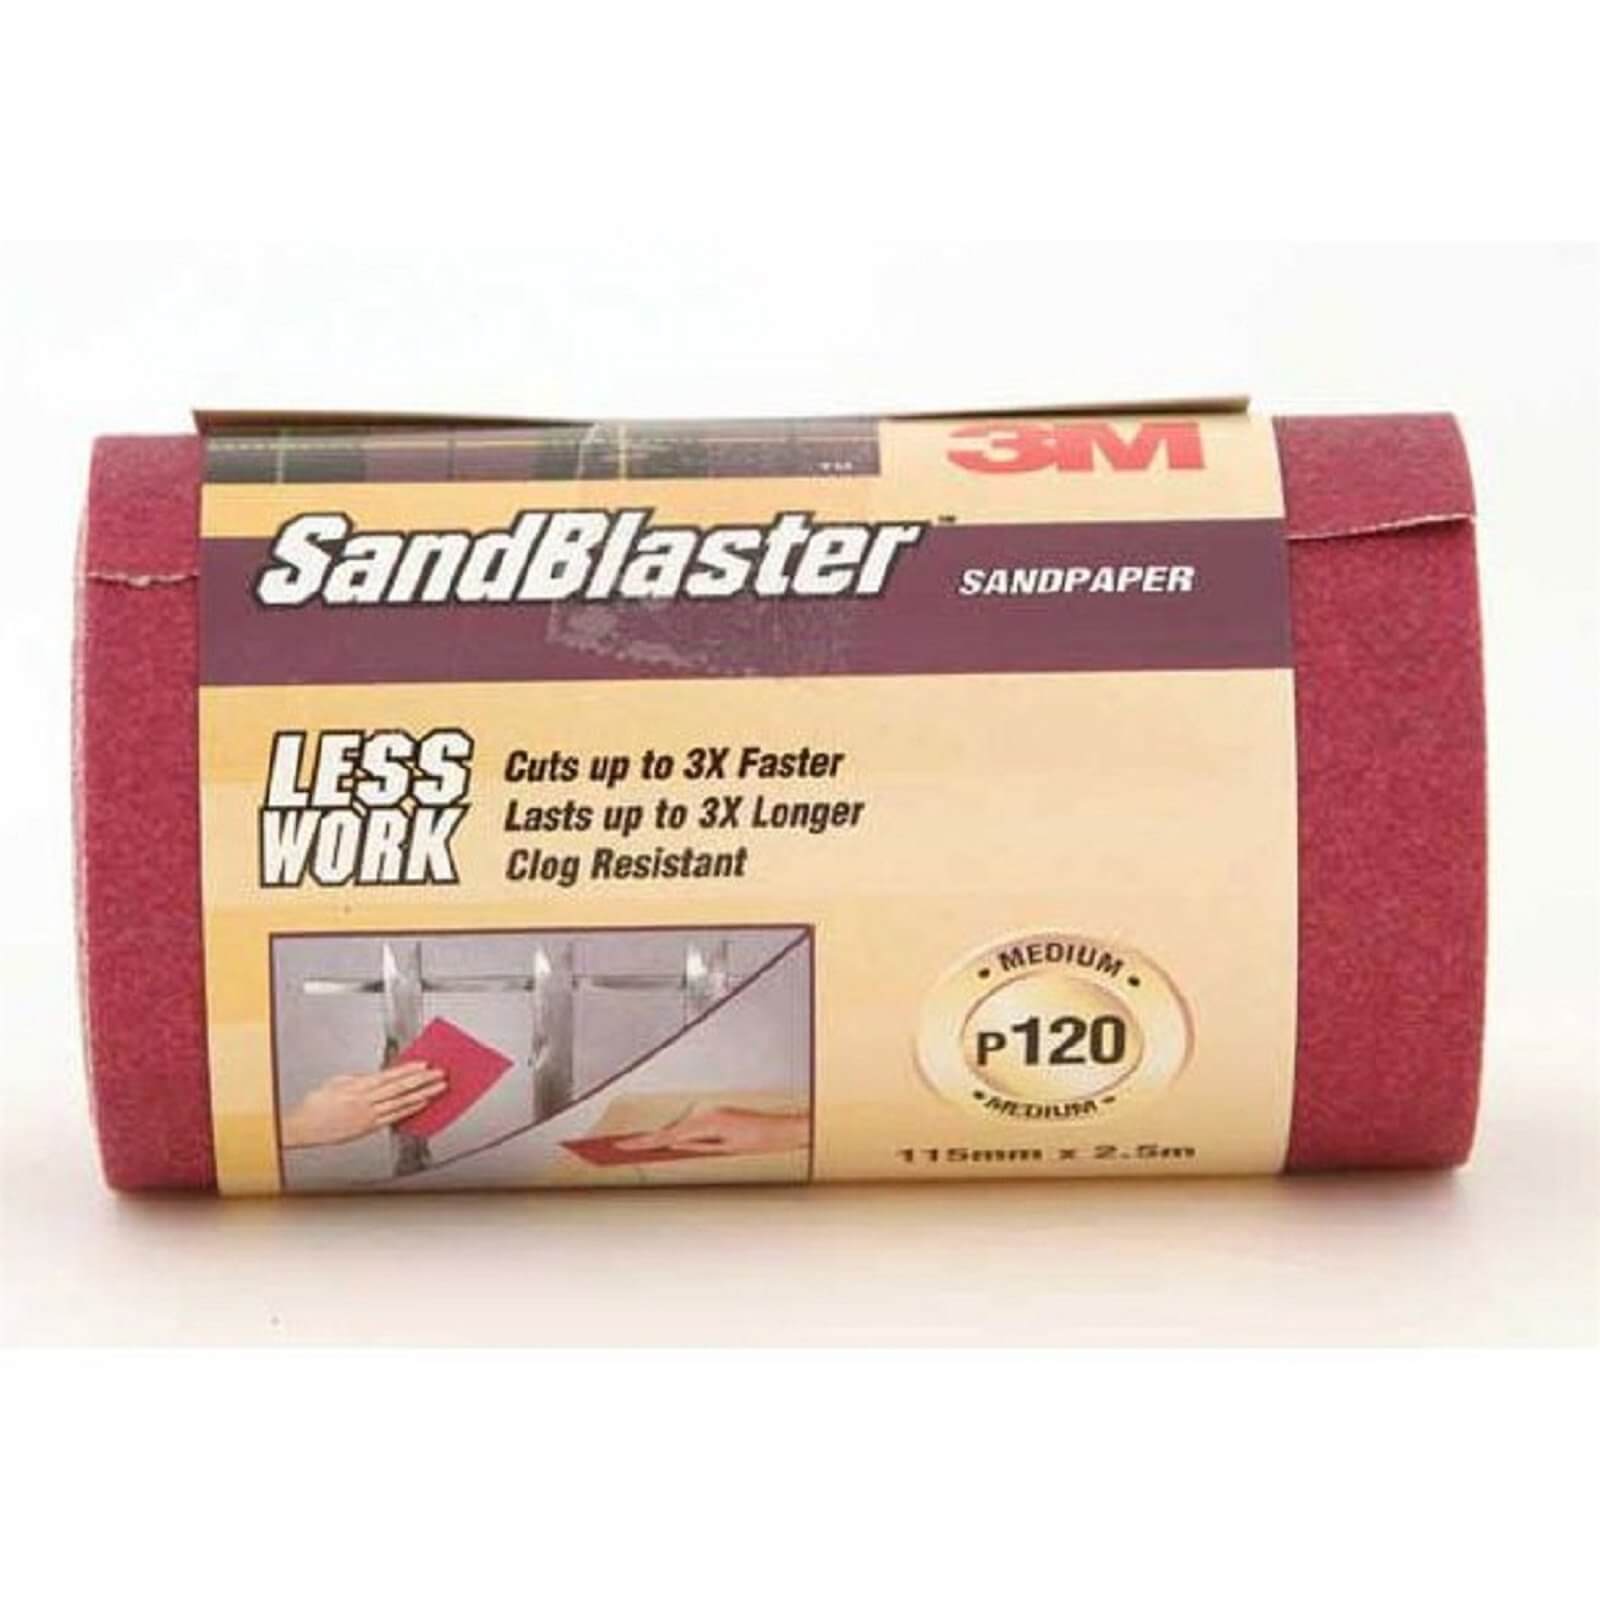 3M P120 SandBlaster Roll - Medium Grade - 2.5m